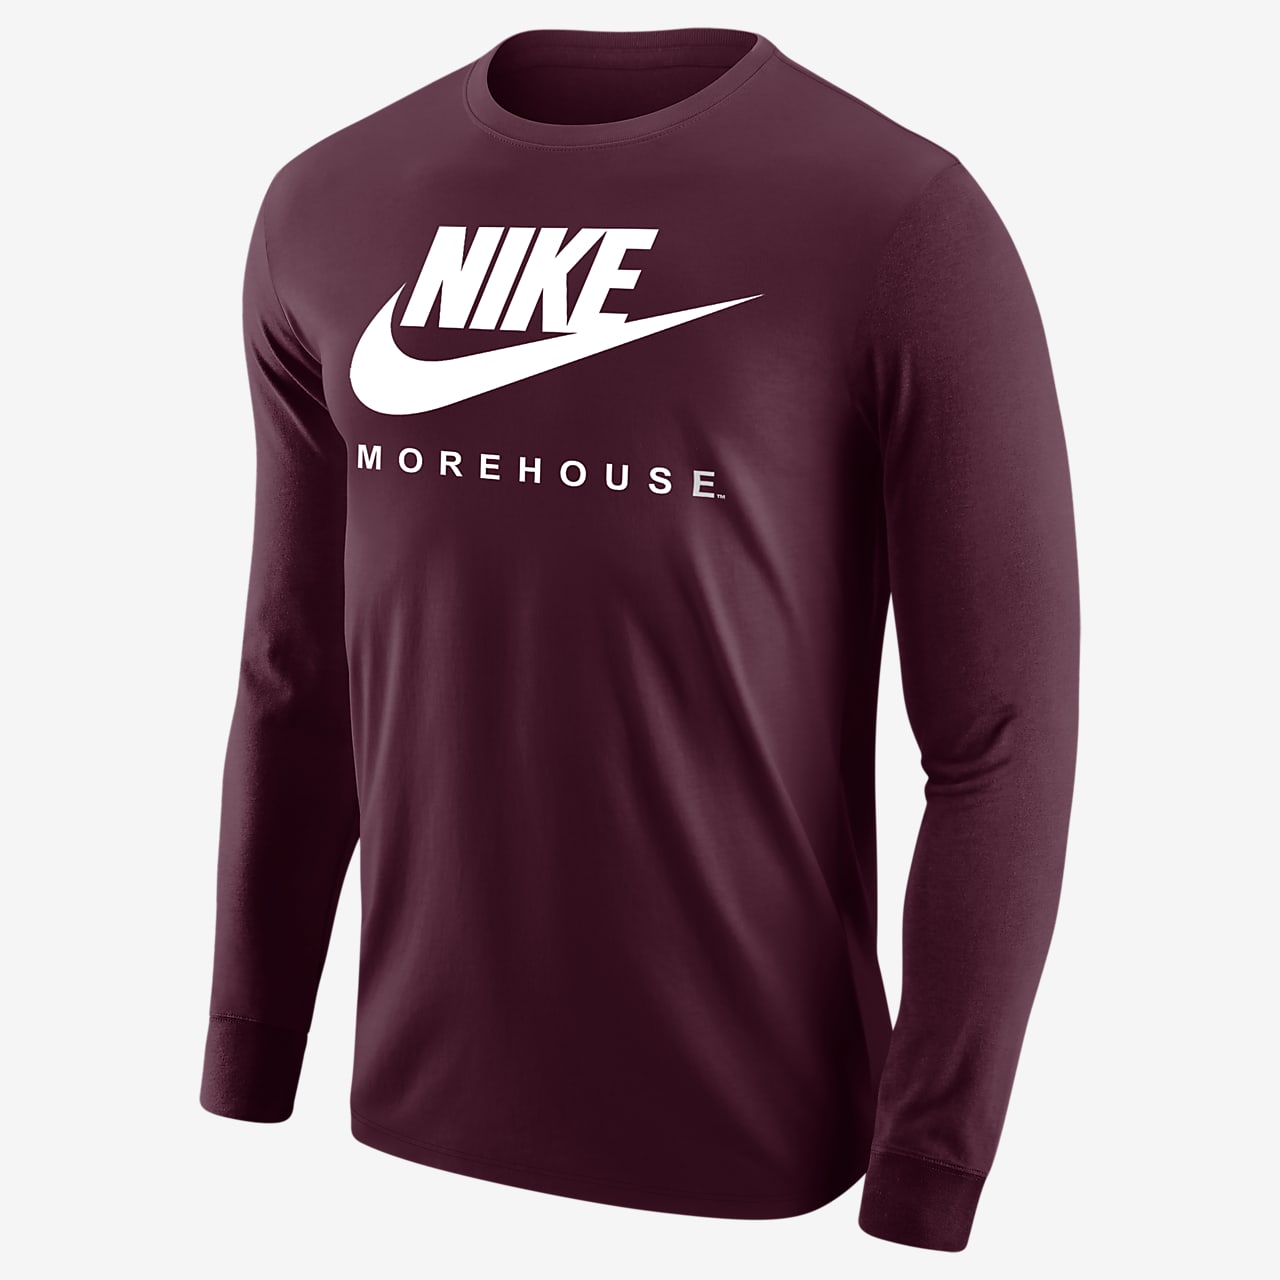 Nike College 365 (Morehouse) Men's Long-Sleeve T-Shirt